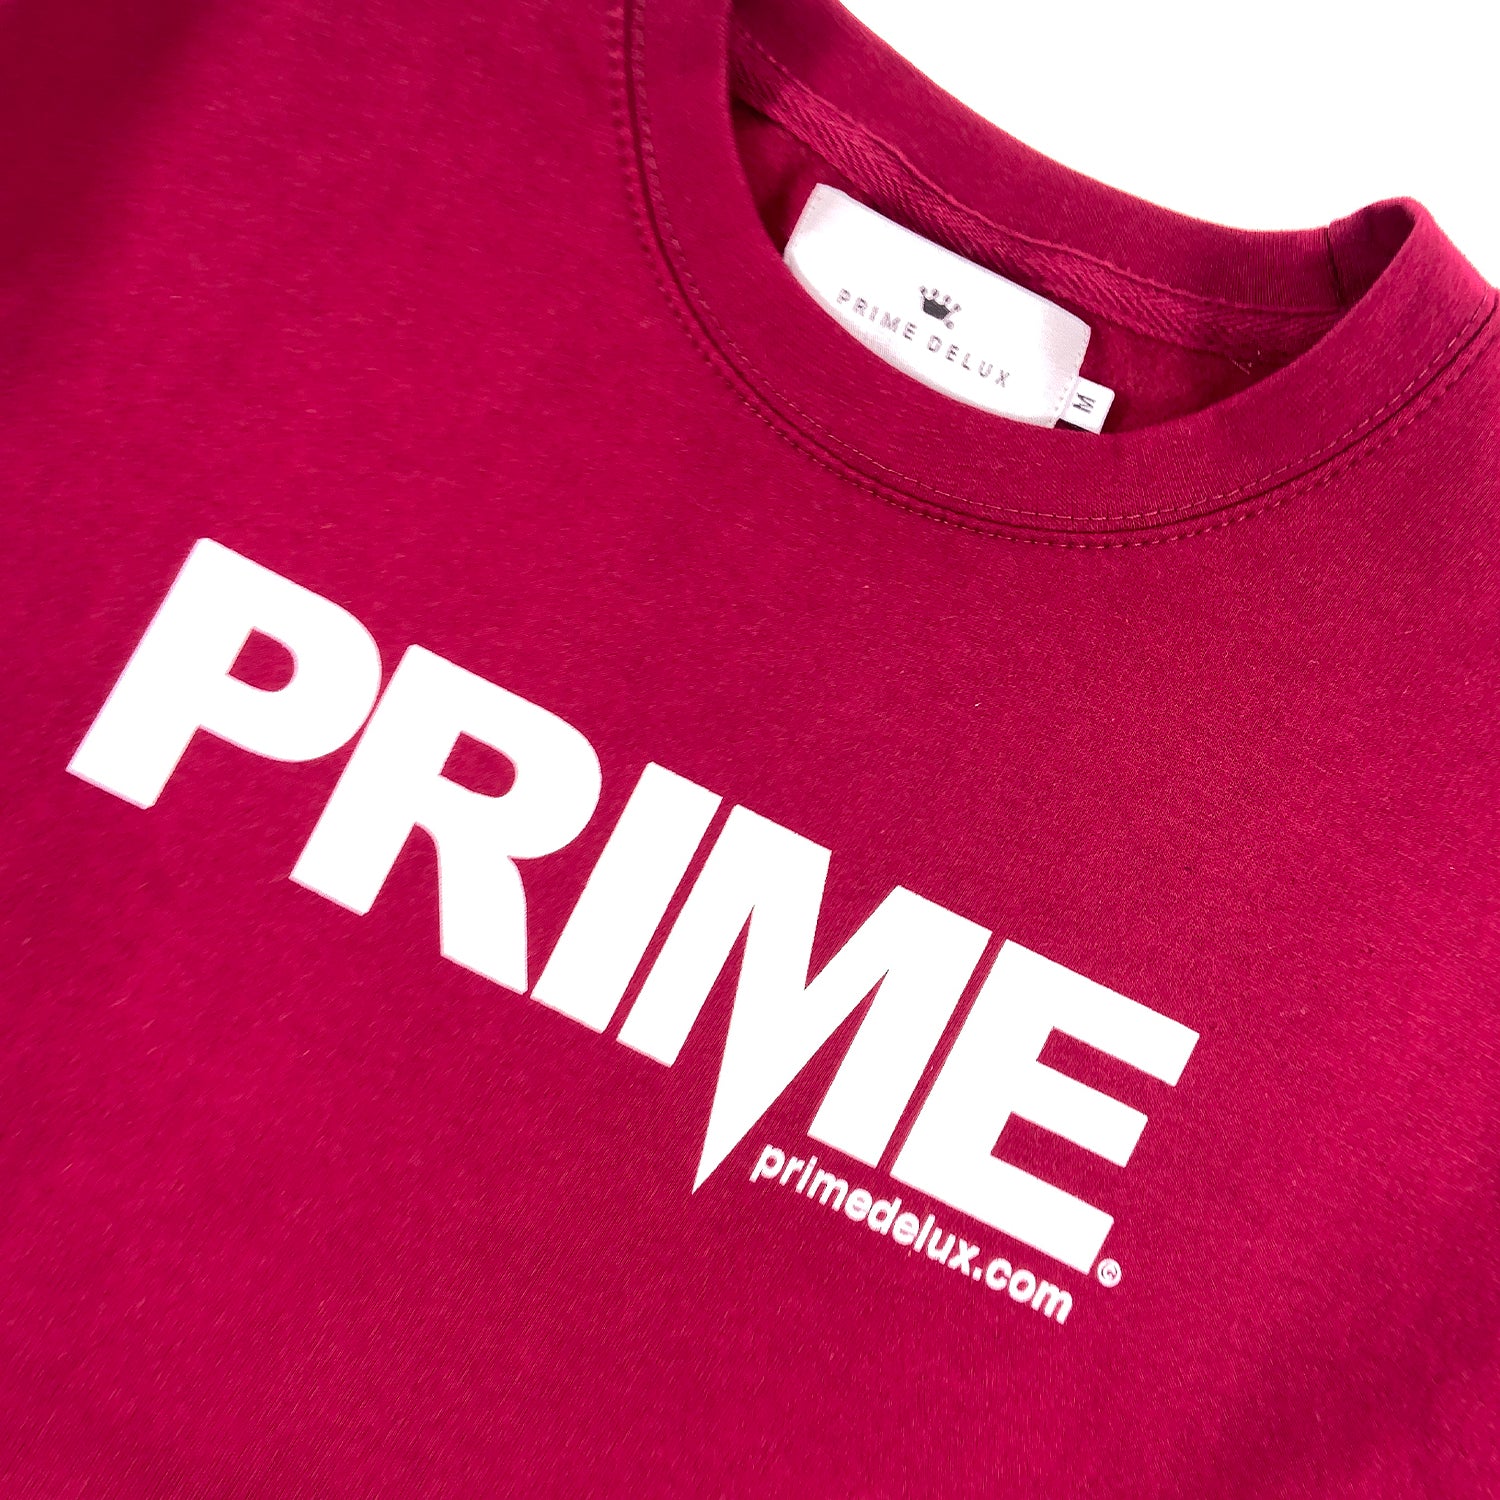 PRIME DELUX OG PREMIUM CREW SWEAT - BURGUNDY / WHITE - Prime Delux Store